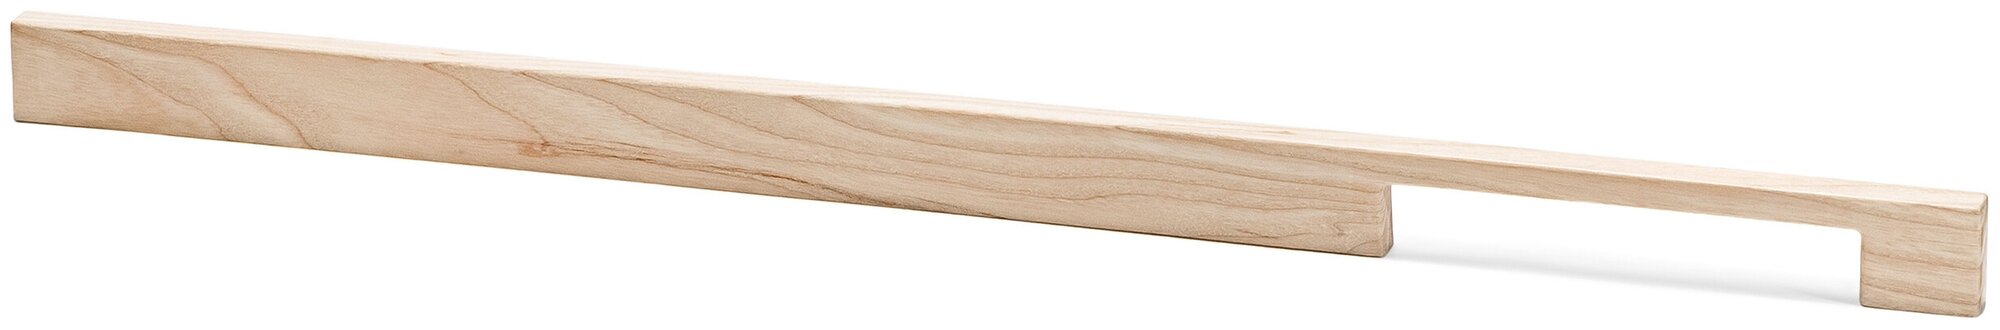 Ручка мебельная, деревянная, длинная, скоба, белая, для кухни или кухонной мебели, шкафа, м/о 150/330/510 мм, модель: "Clapton 540" 1 шт.